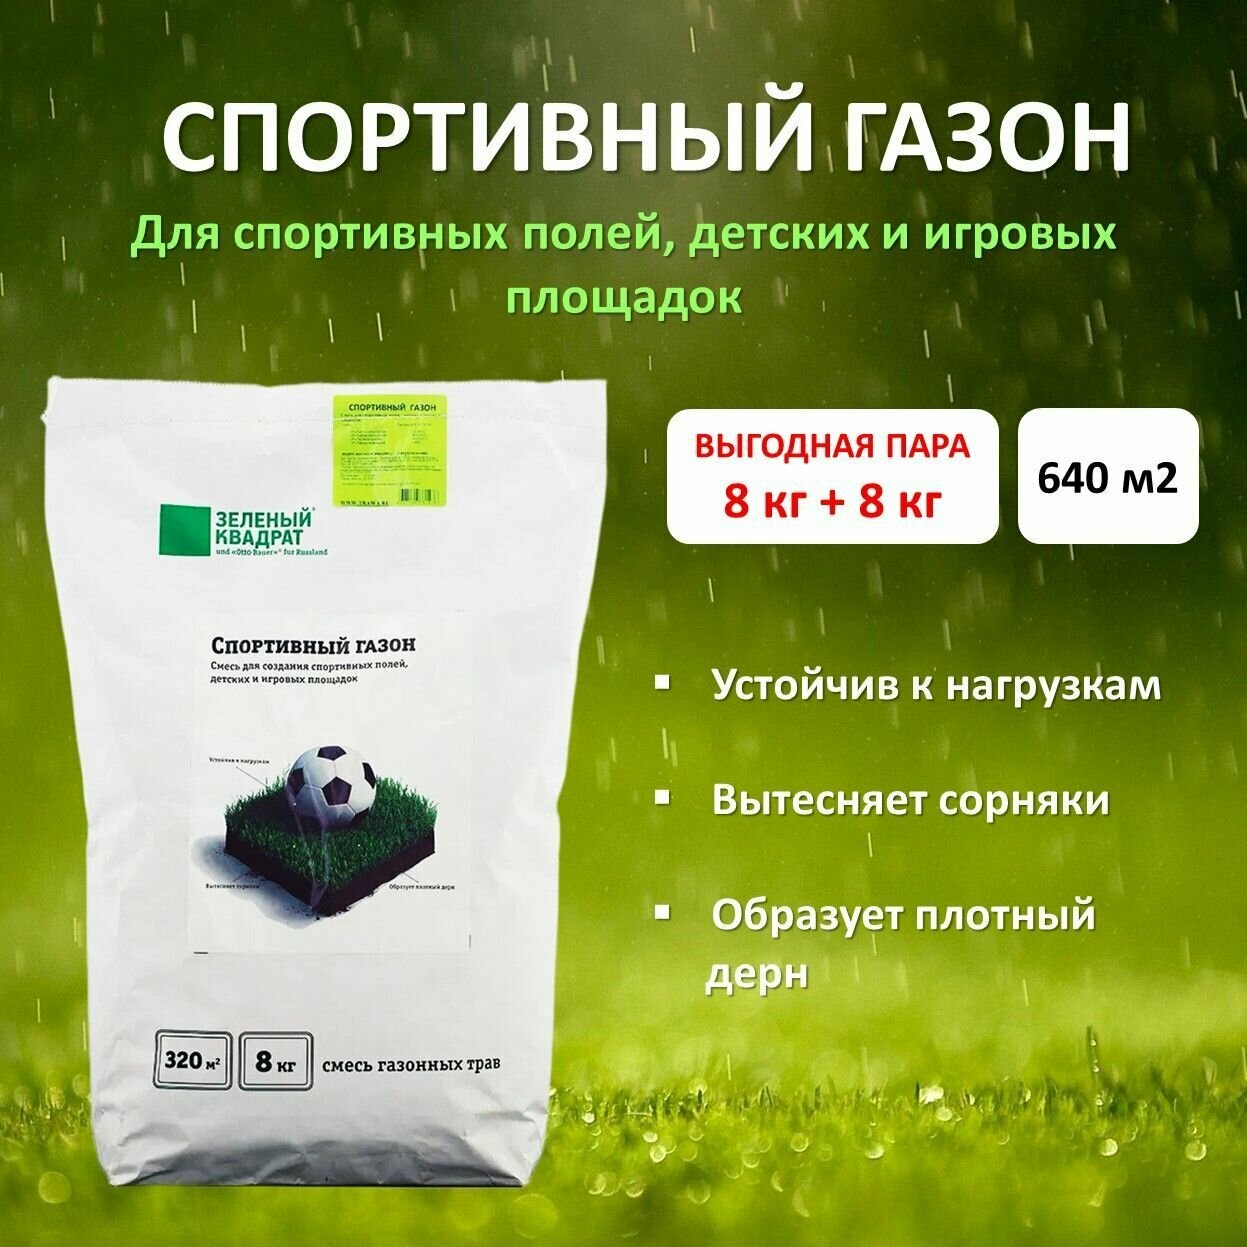 Семена газона Спортивный (зеленый квадрат), 8 кг х 2 шт (16 кг)